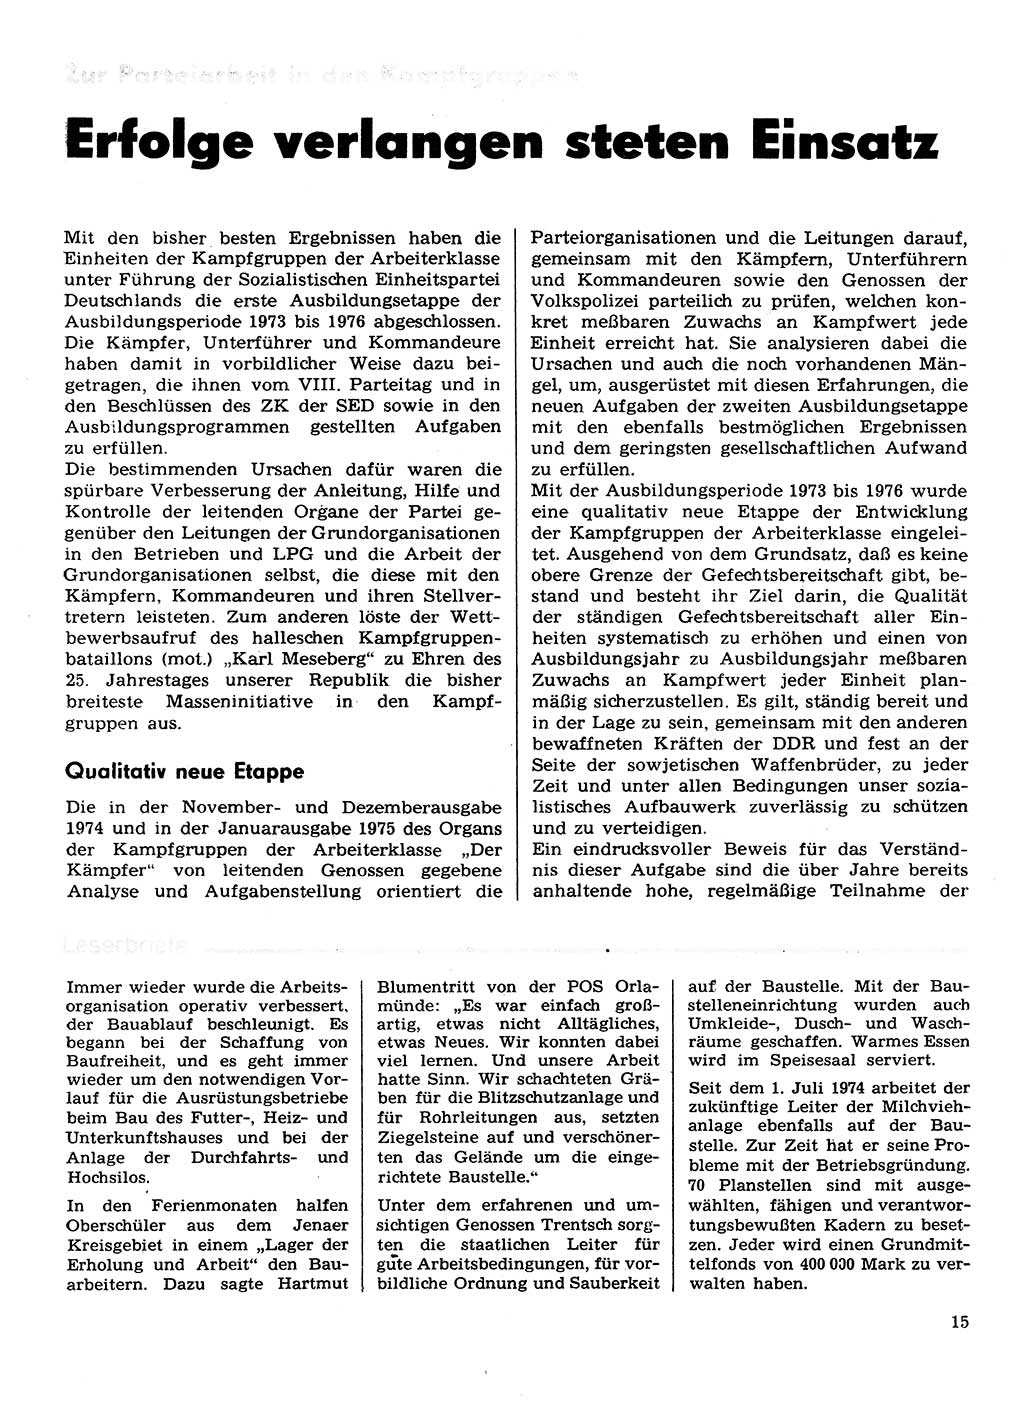 Neuer Weg (NW), Organ des Zentralkomitees (ZK) der SED (Sozialistische Einheitspartei Deutschlands) für Fragen des Parteilebens, 30. Jahrgang [Deutsche Demokratische Republik (DDR)] 1975, Seite 15 (NW ZK SED DDR 1975, S. 15)